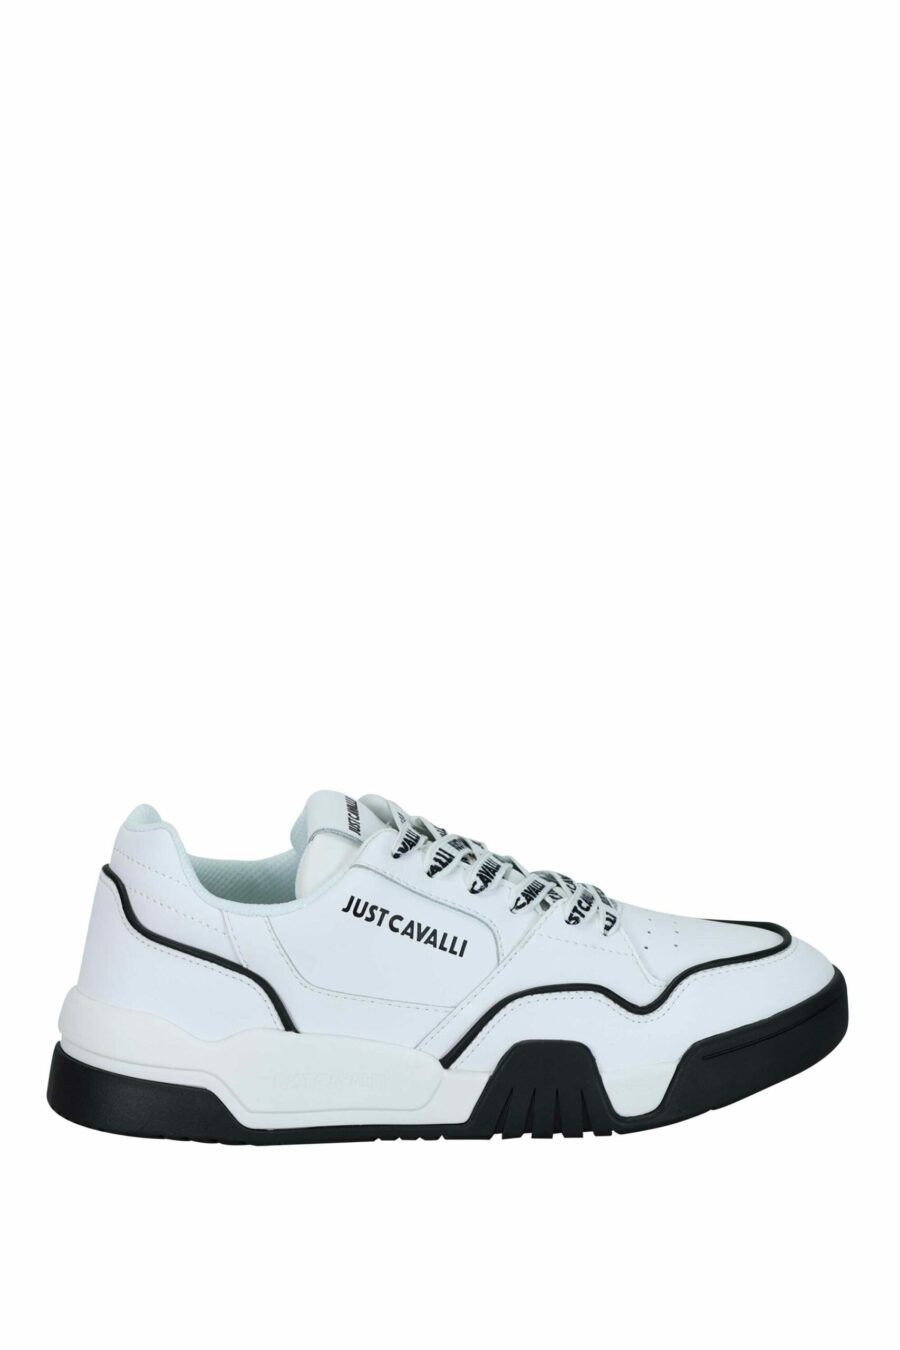 Zapatillas blancas con detalles negros y logo monocromático - 8052672737144 scaled